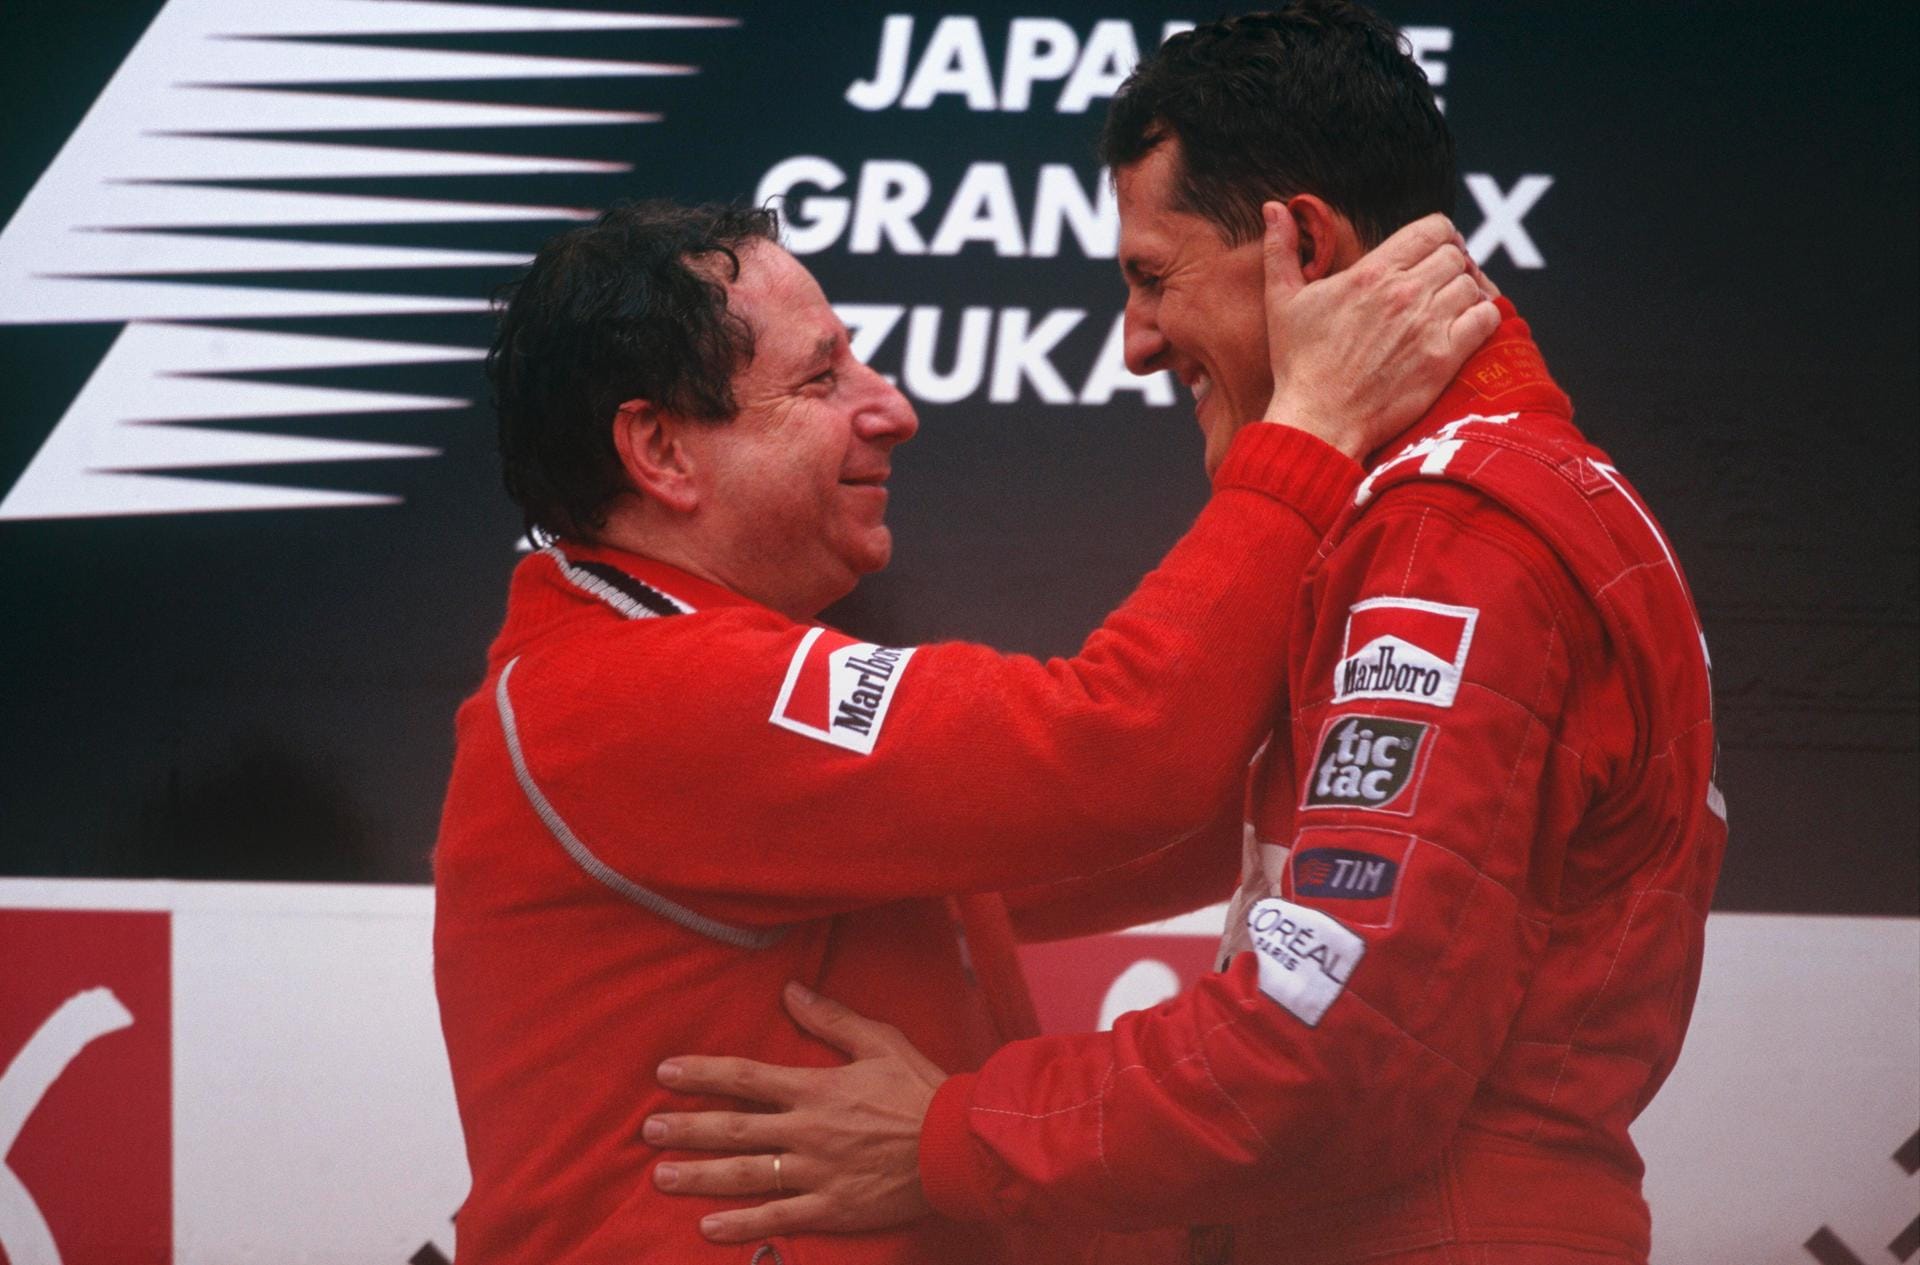 Jean Todt (l.): Der Ferrari-Teamchef und sein Schützling im Jahr 2000 auf dem Podest in Japan. In der Saison, in der das Foto entstand, gewann Schumacher am Ende seinen ersten WM-Titel mit Ferrari. Todt war selbst Rennfahrer und nahm 1993 den Posten bei der Scuderia an, 2008 gab er ihn wieder ab. Seit 2009 ist er Präsident der FIA.